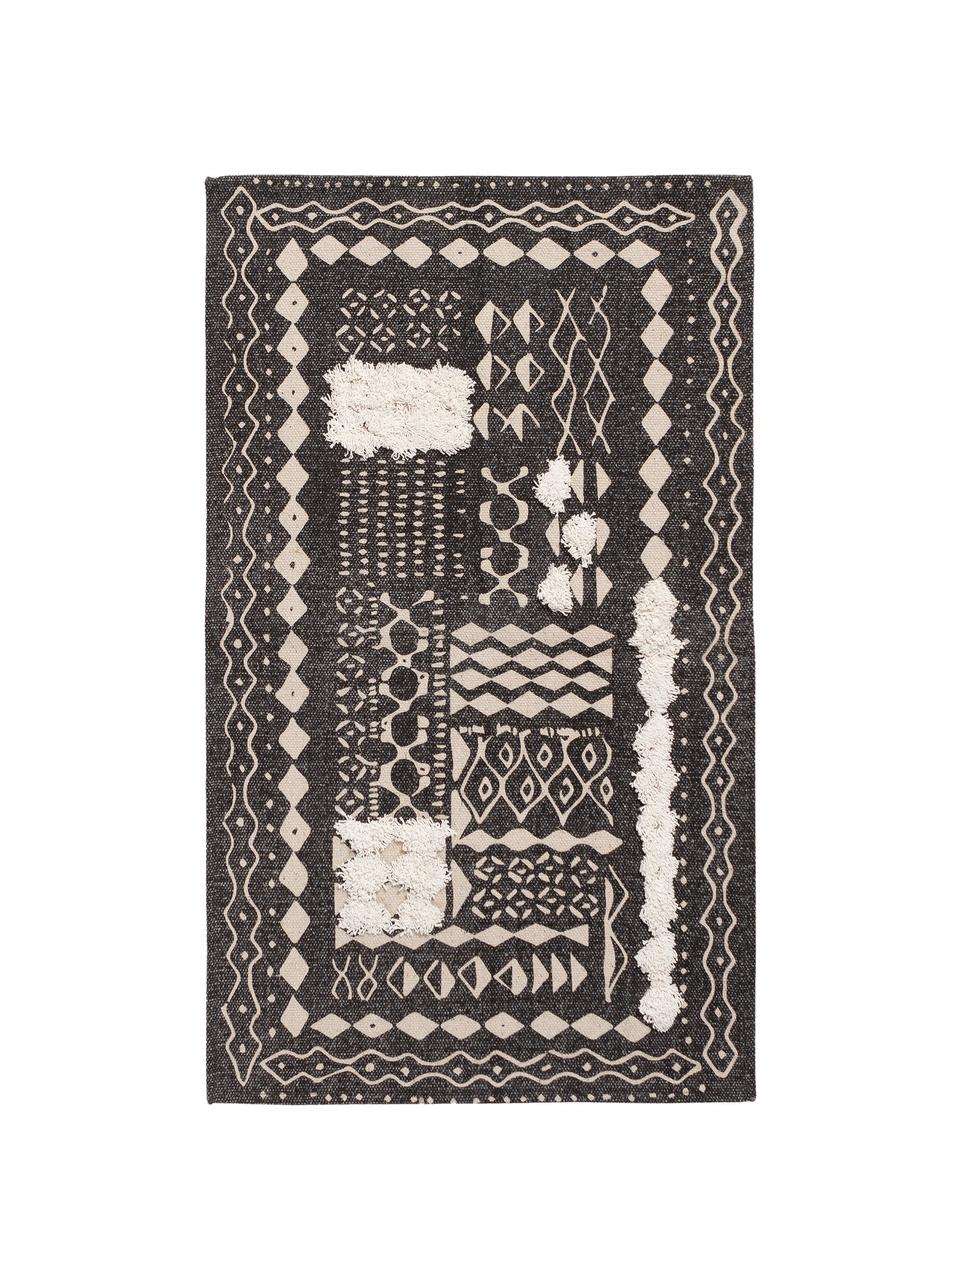 Boho Baumwollteppich Boa mit Hoch-Tief-Muster in Schwarz/Weiß, 100% Baumwolle, Schwarz, Weiß, B 150 x L 200 cm (Größe S)